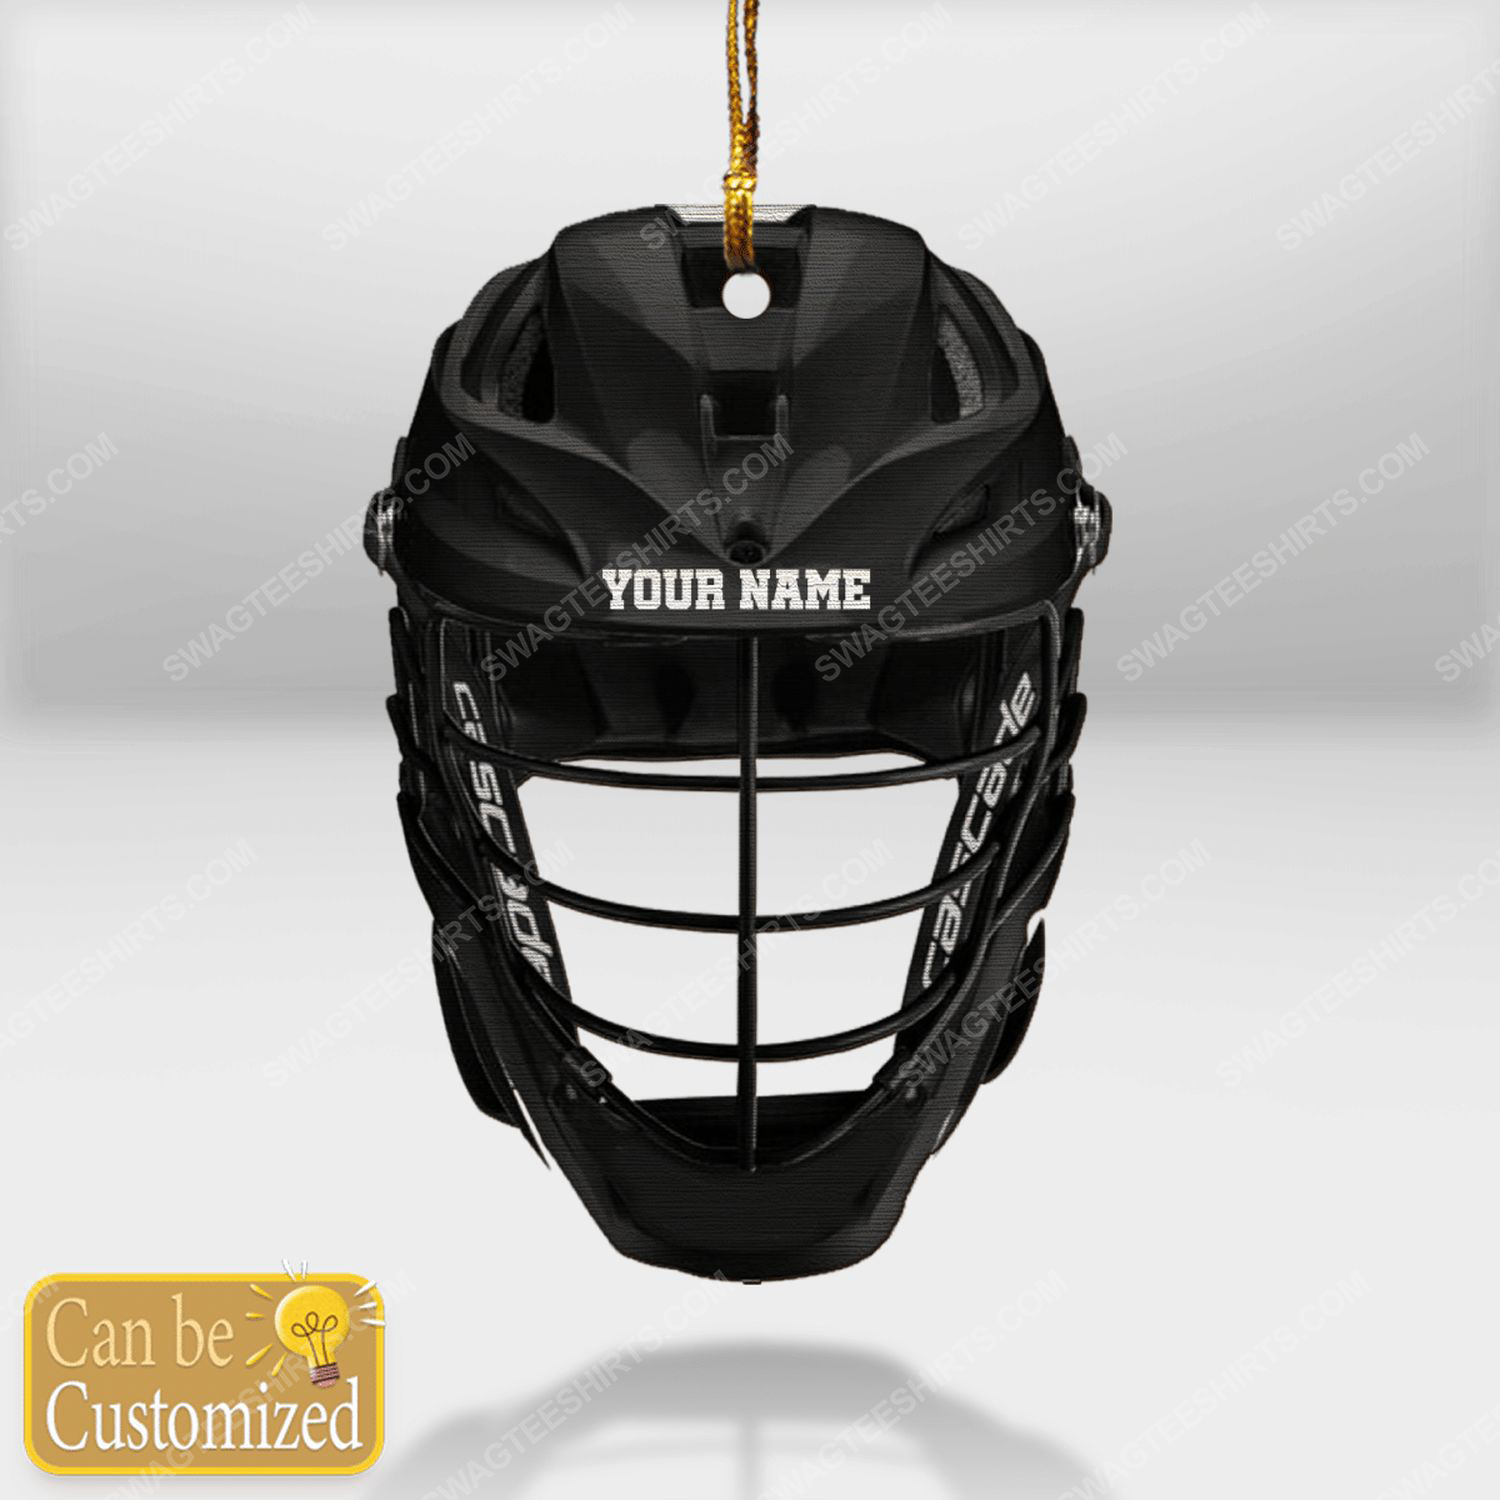 Custom lacrosse helmet black mask christmas gift ornament 1